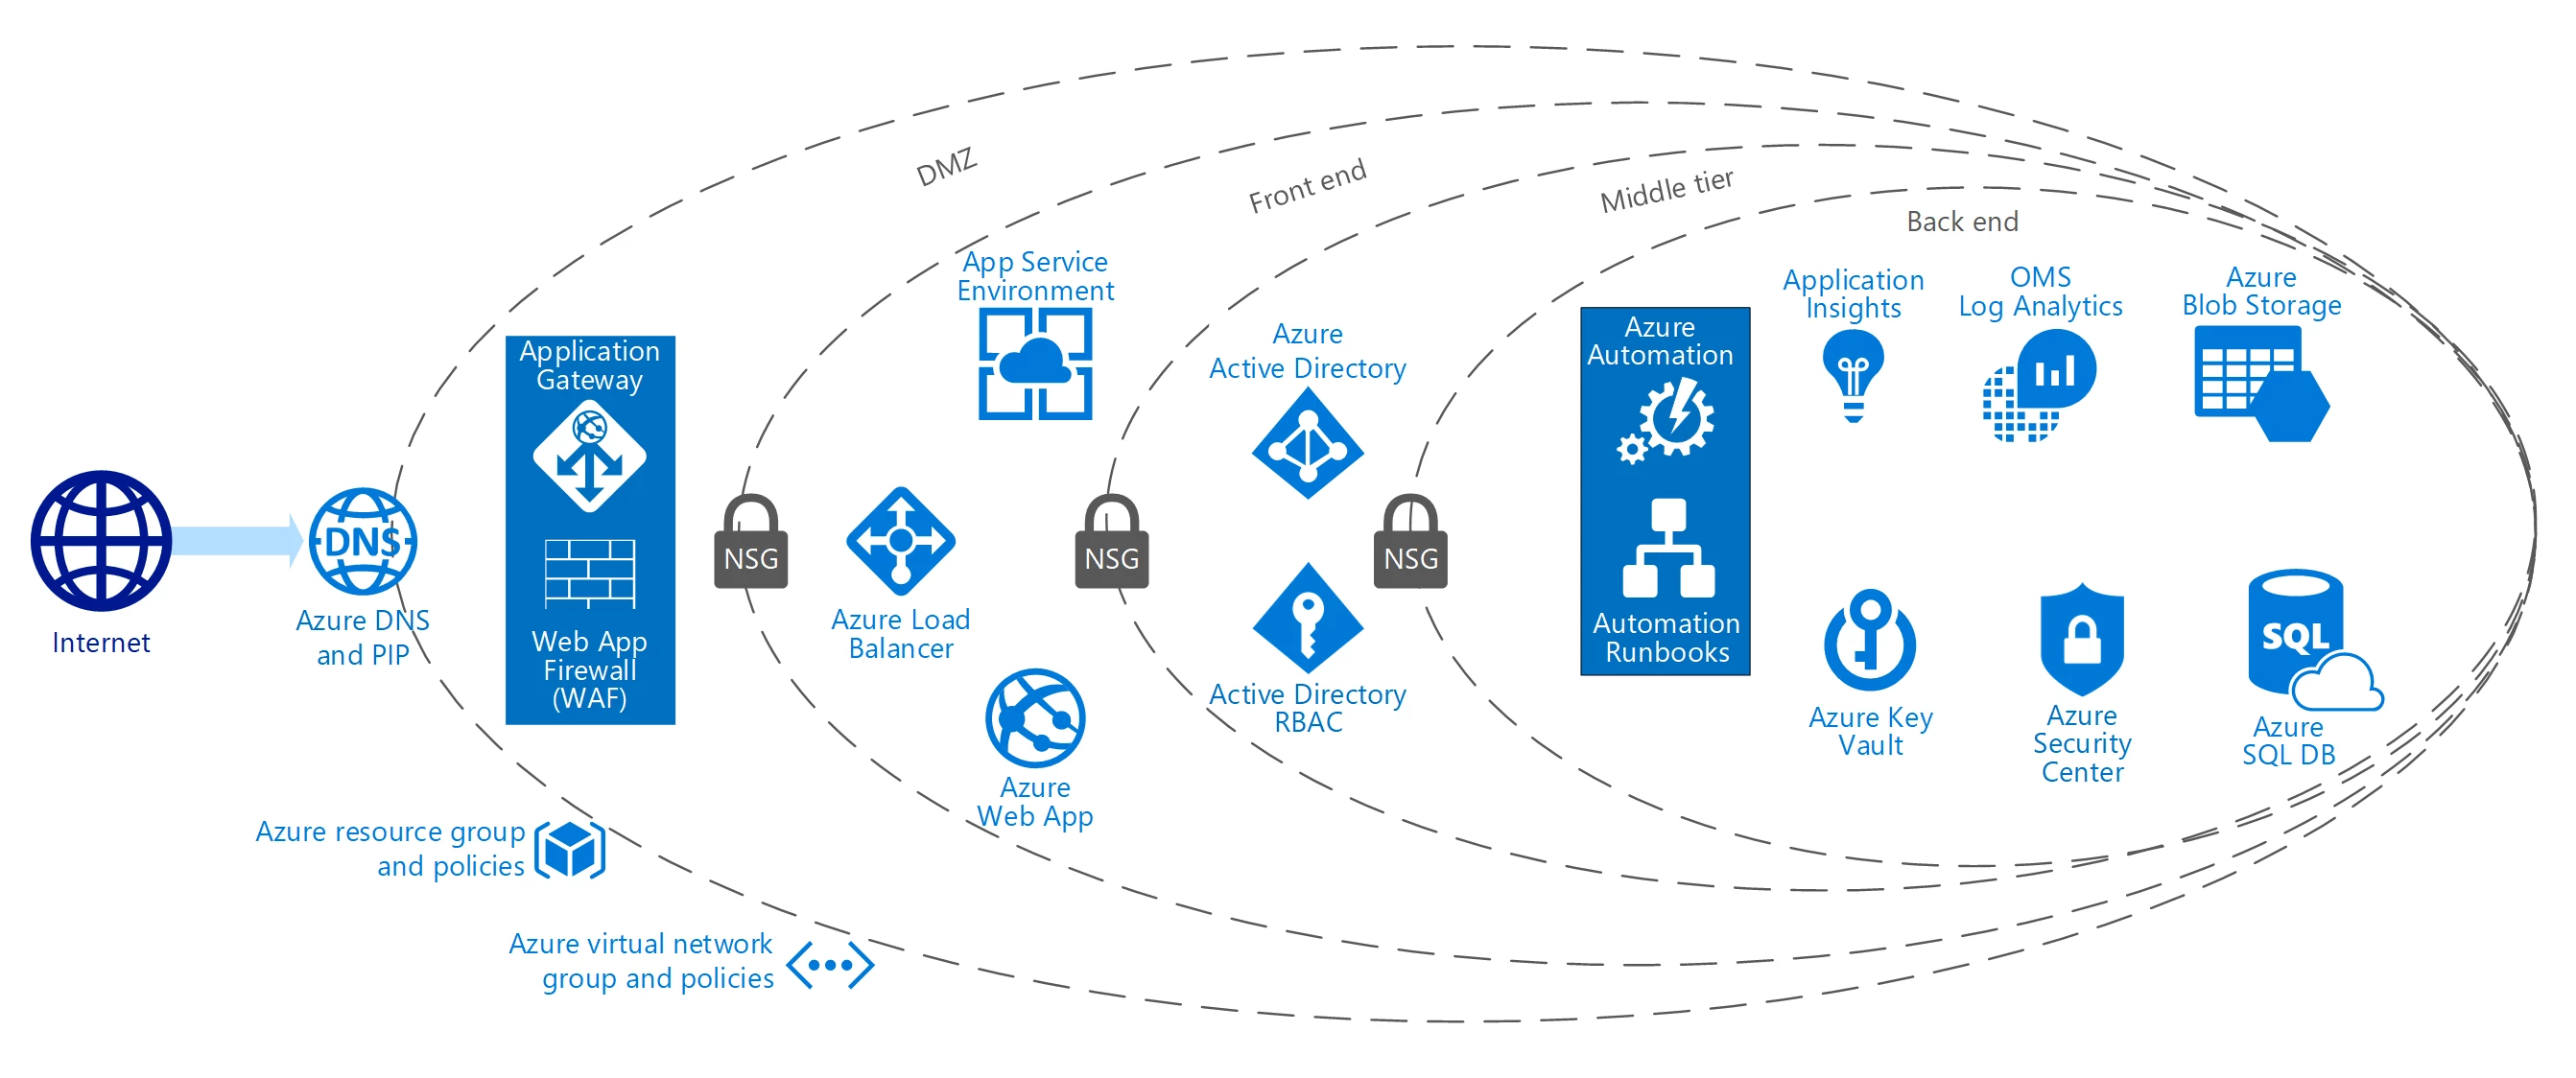 Azure Solutions Blueprint